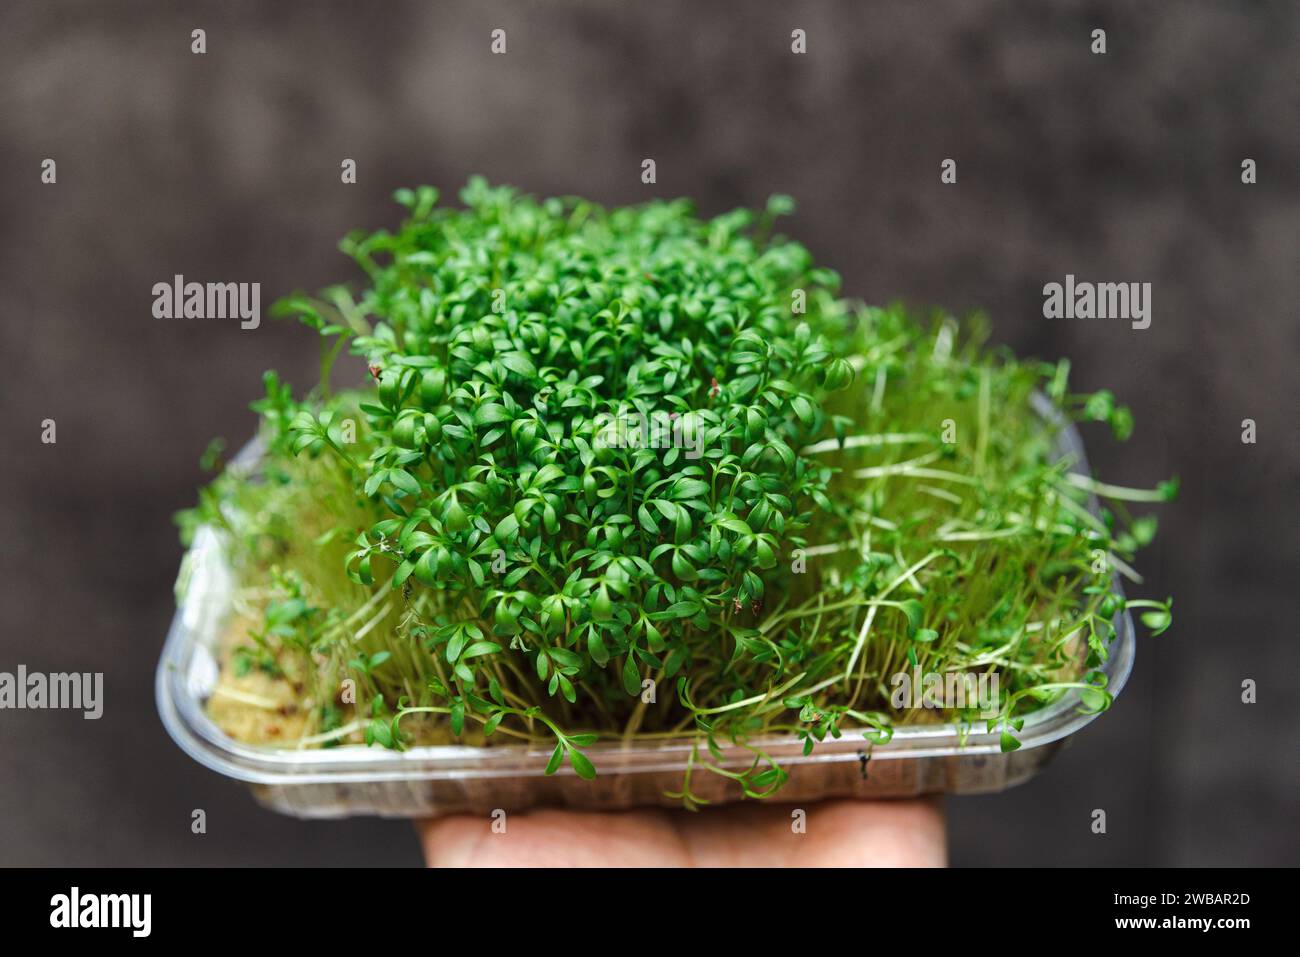 Nahaufnahme einer Hand, die einen klaren Behälter mit üppiger grüner Gartenkresse hält, eine nährstoffreiche Sprosssorte für gesunde Ernährung. Stockfoto